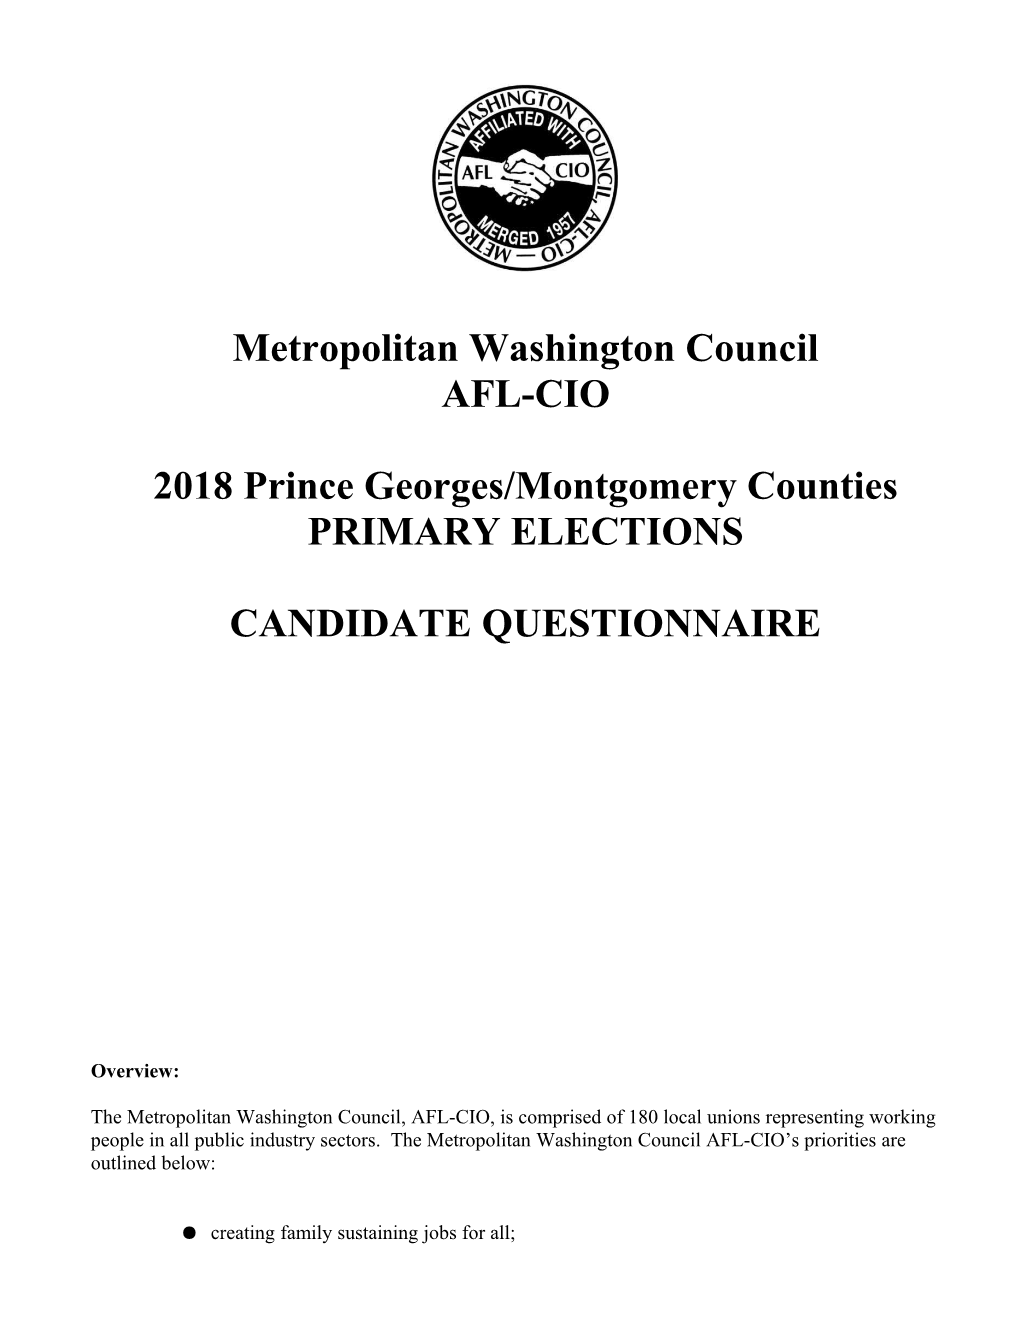 Metropolitan Washington Council: AFL-CIO 2018 PG/Montgomery Counties Primary Election Candidate